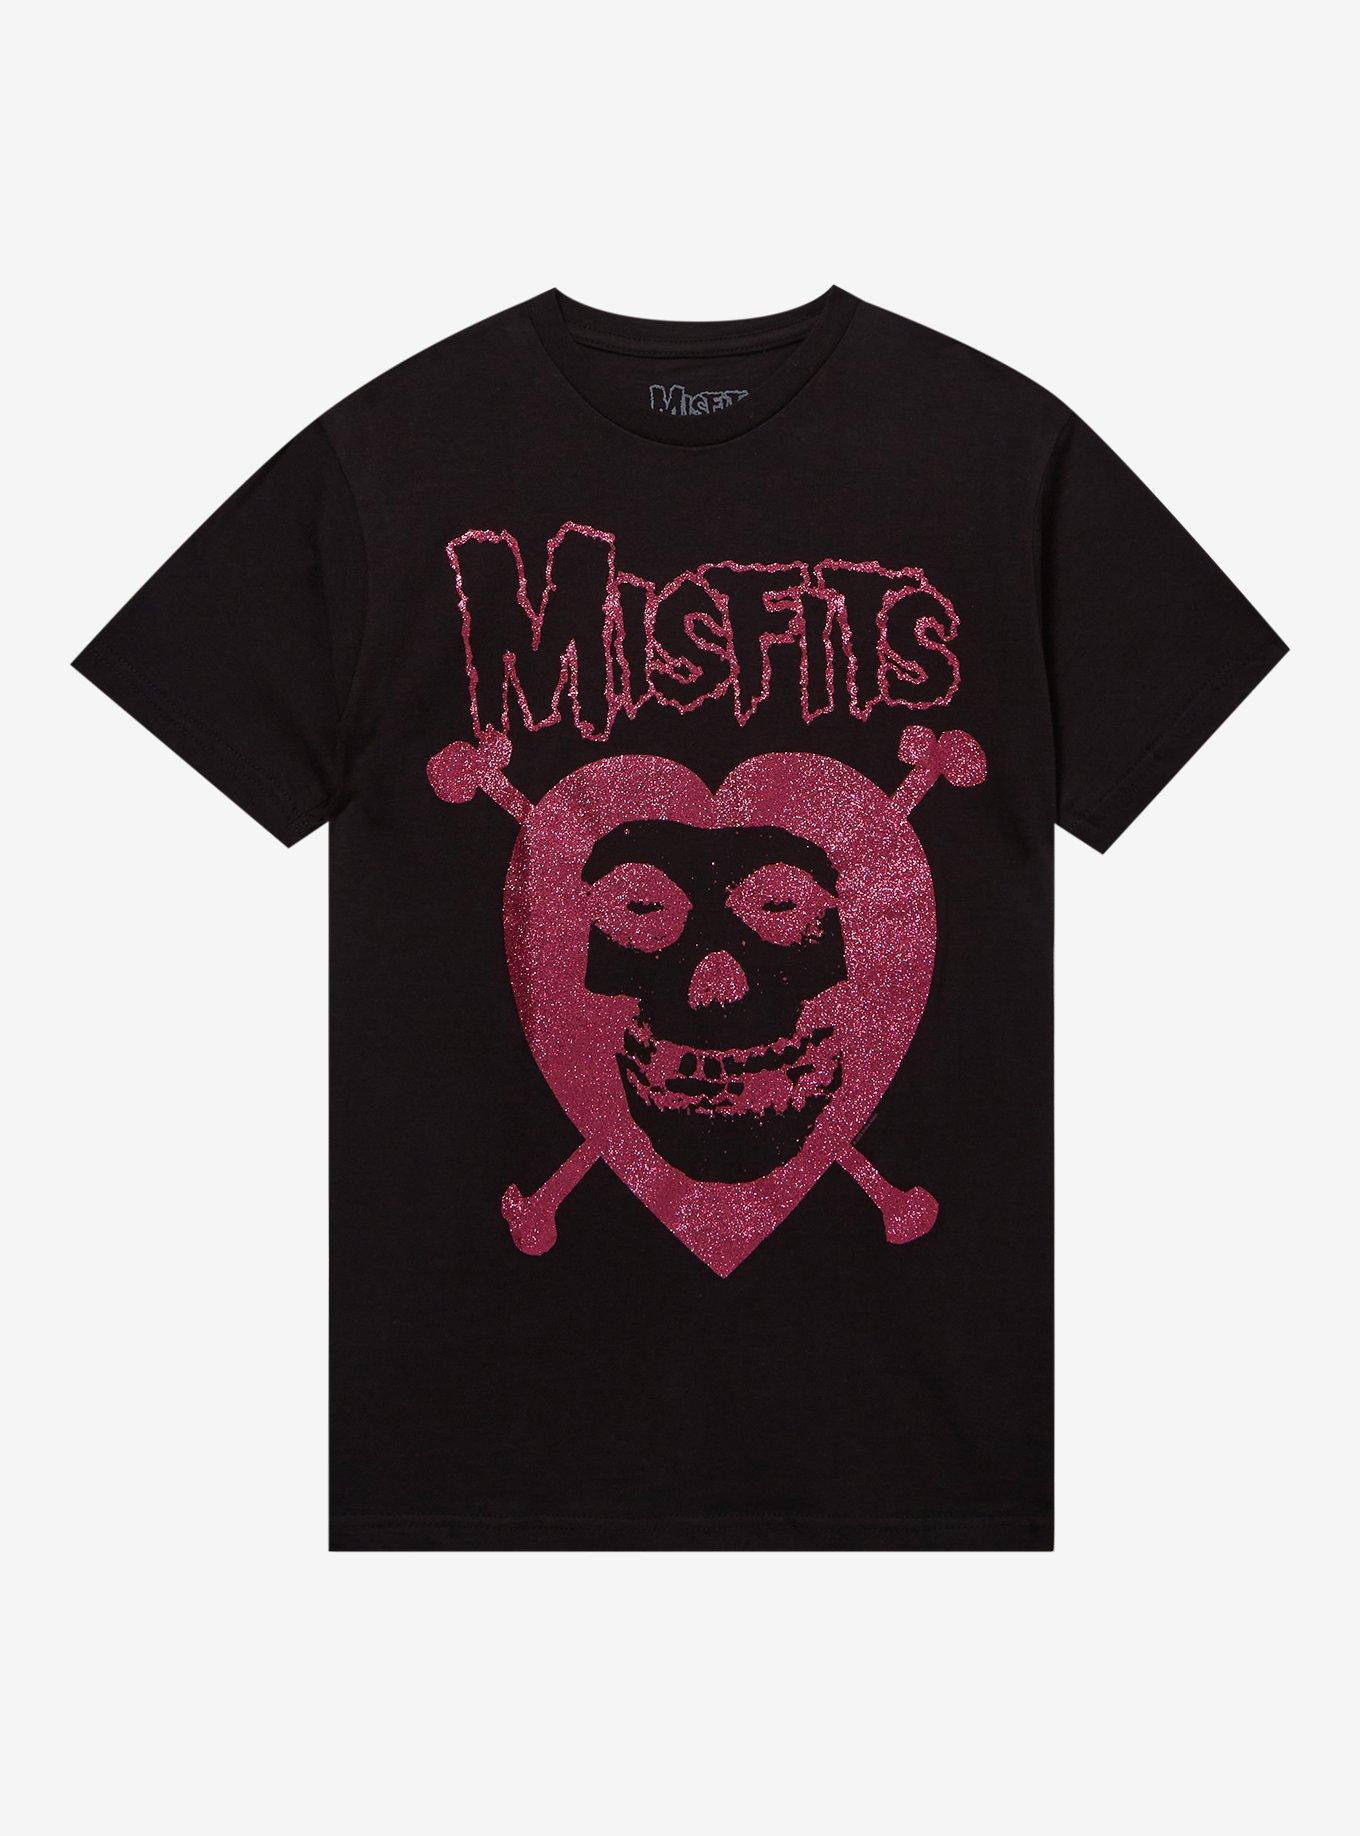 Misfits Fiend Skull Heart Glitter Boyfriend Fit Girls T-Shirt